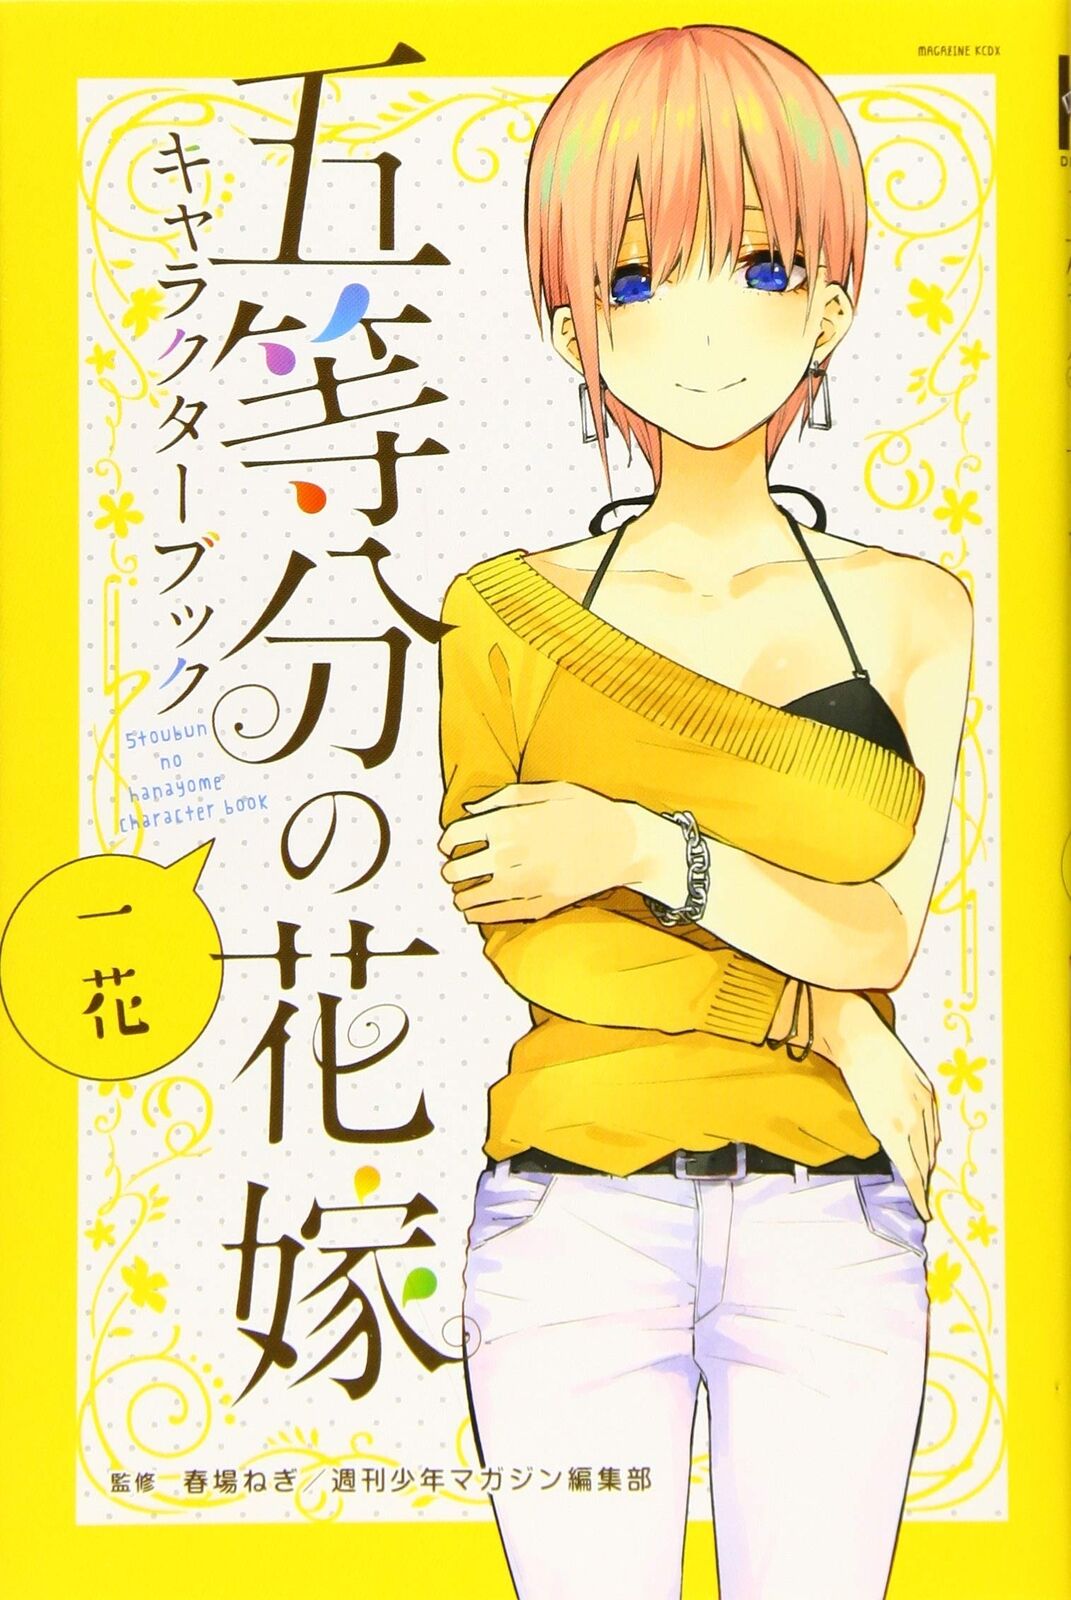 Negi Haruba The Quintessential Quintuplets character book Ichika 